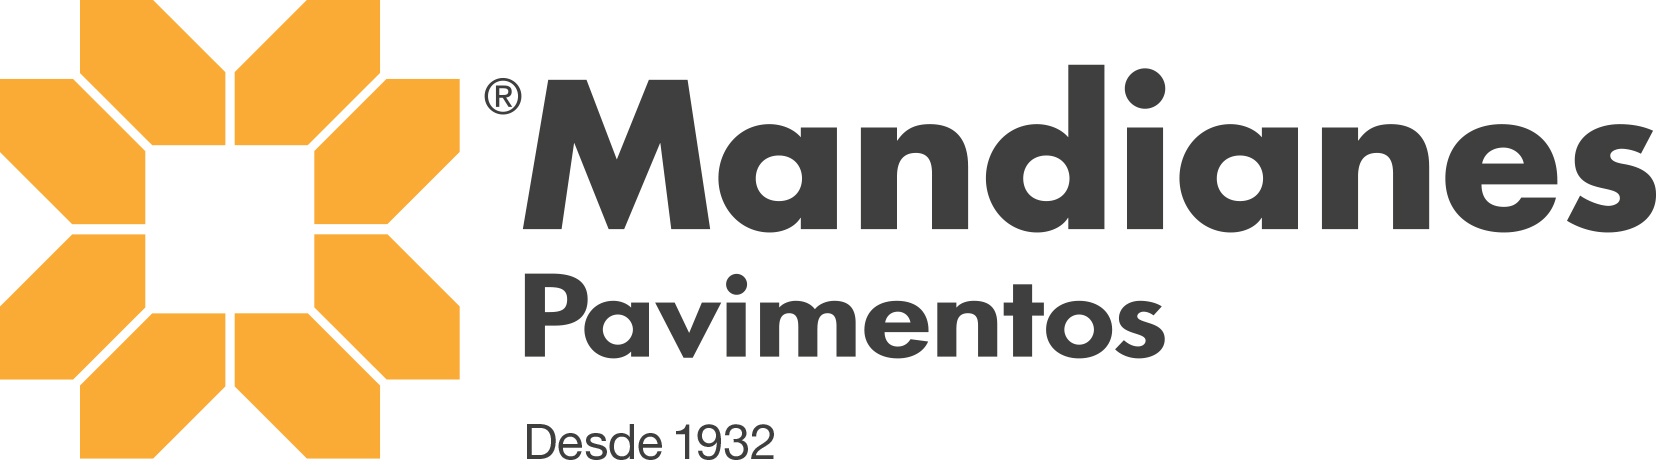 Pavimentos Mandianes Parquets y Puertas Barcelona desde 1932